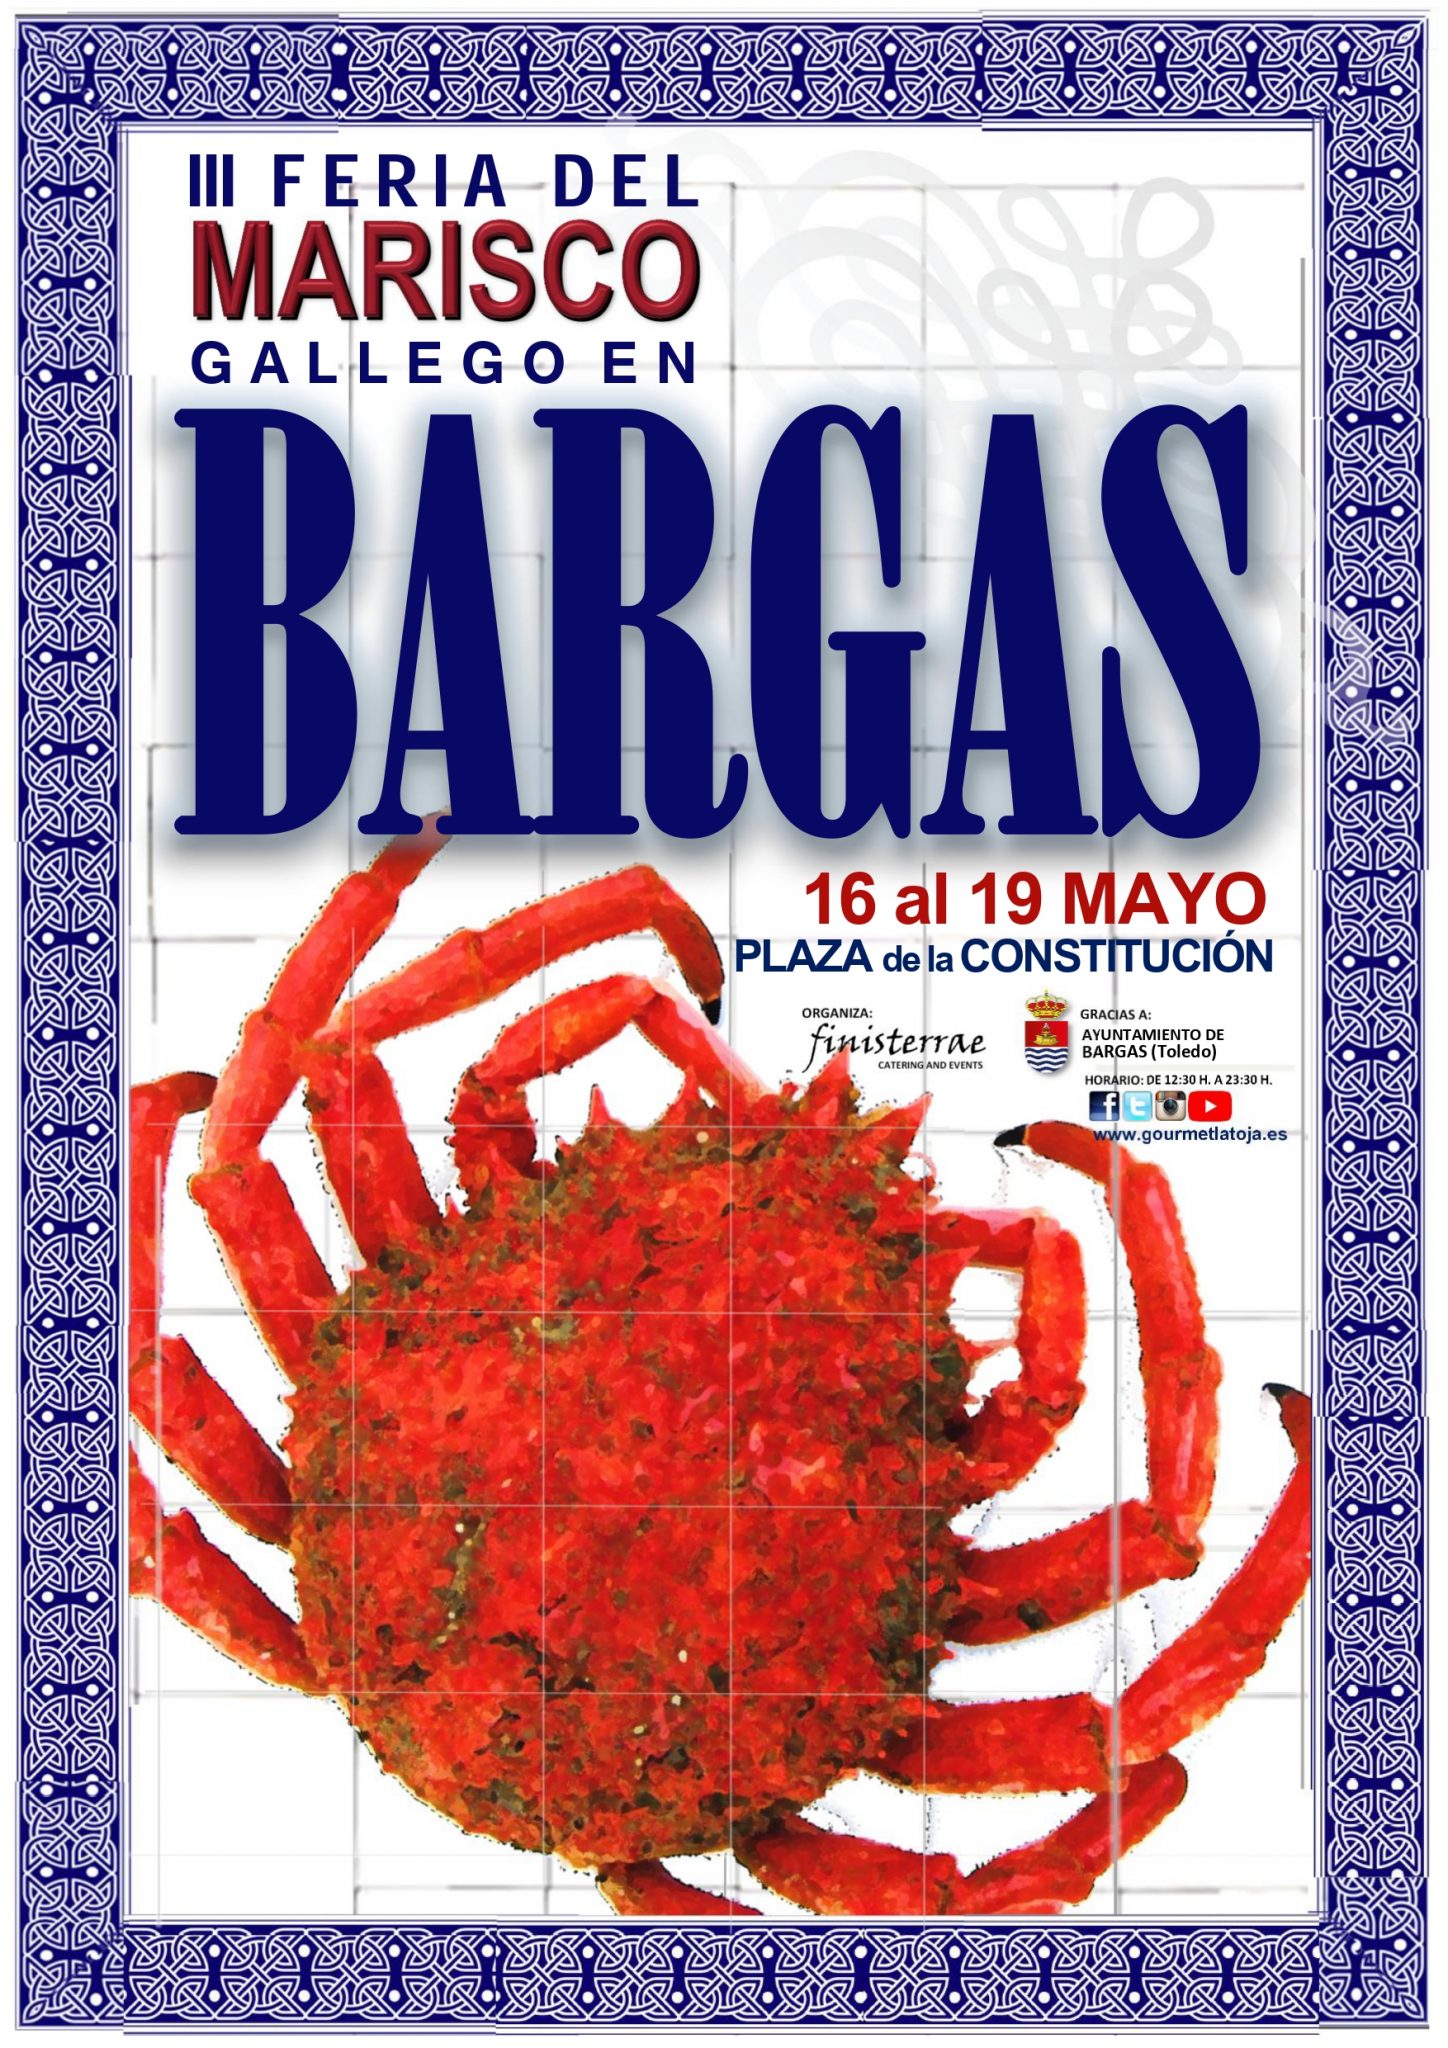 III Feria del Marisco Gallego en Bargas